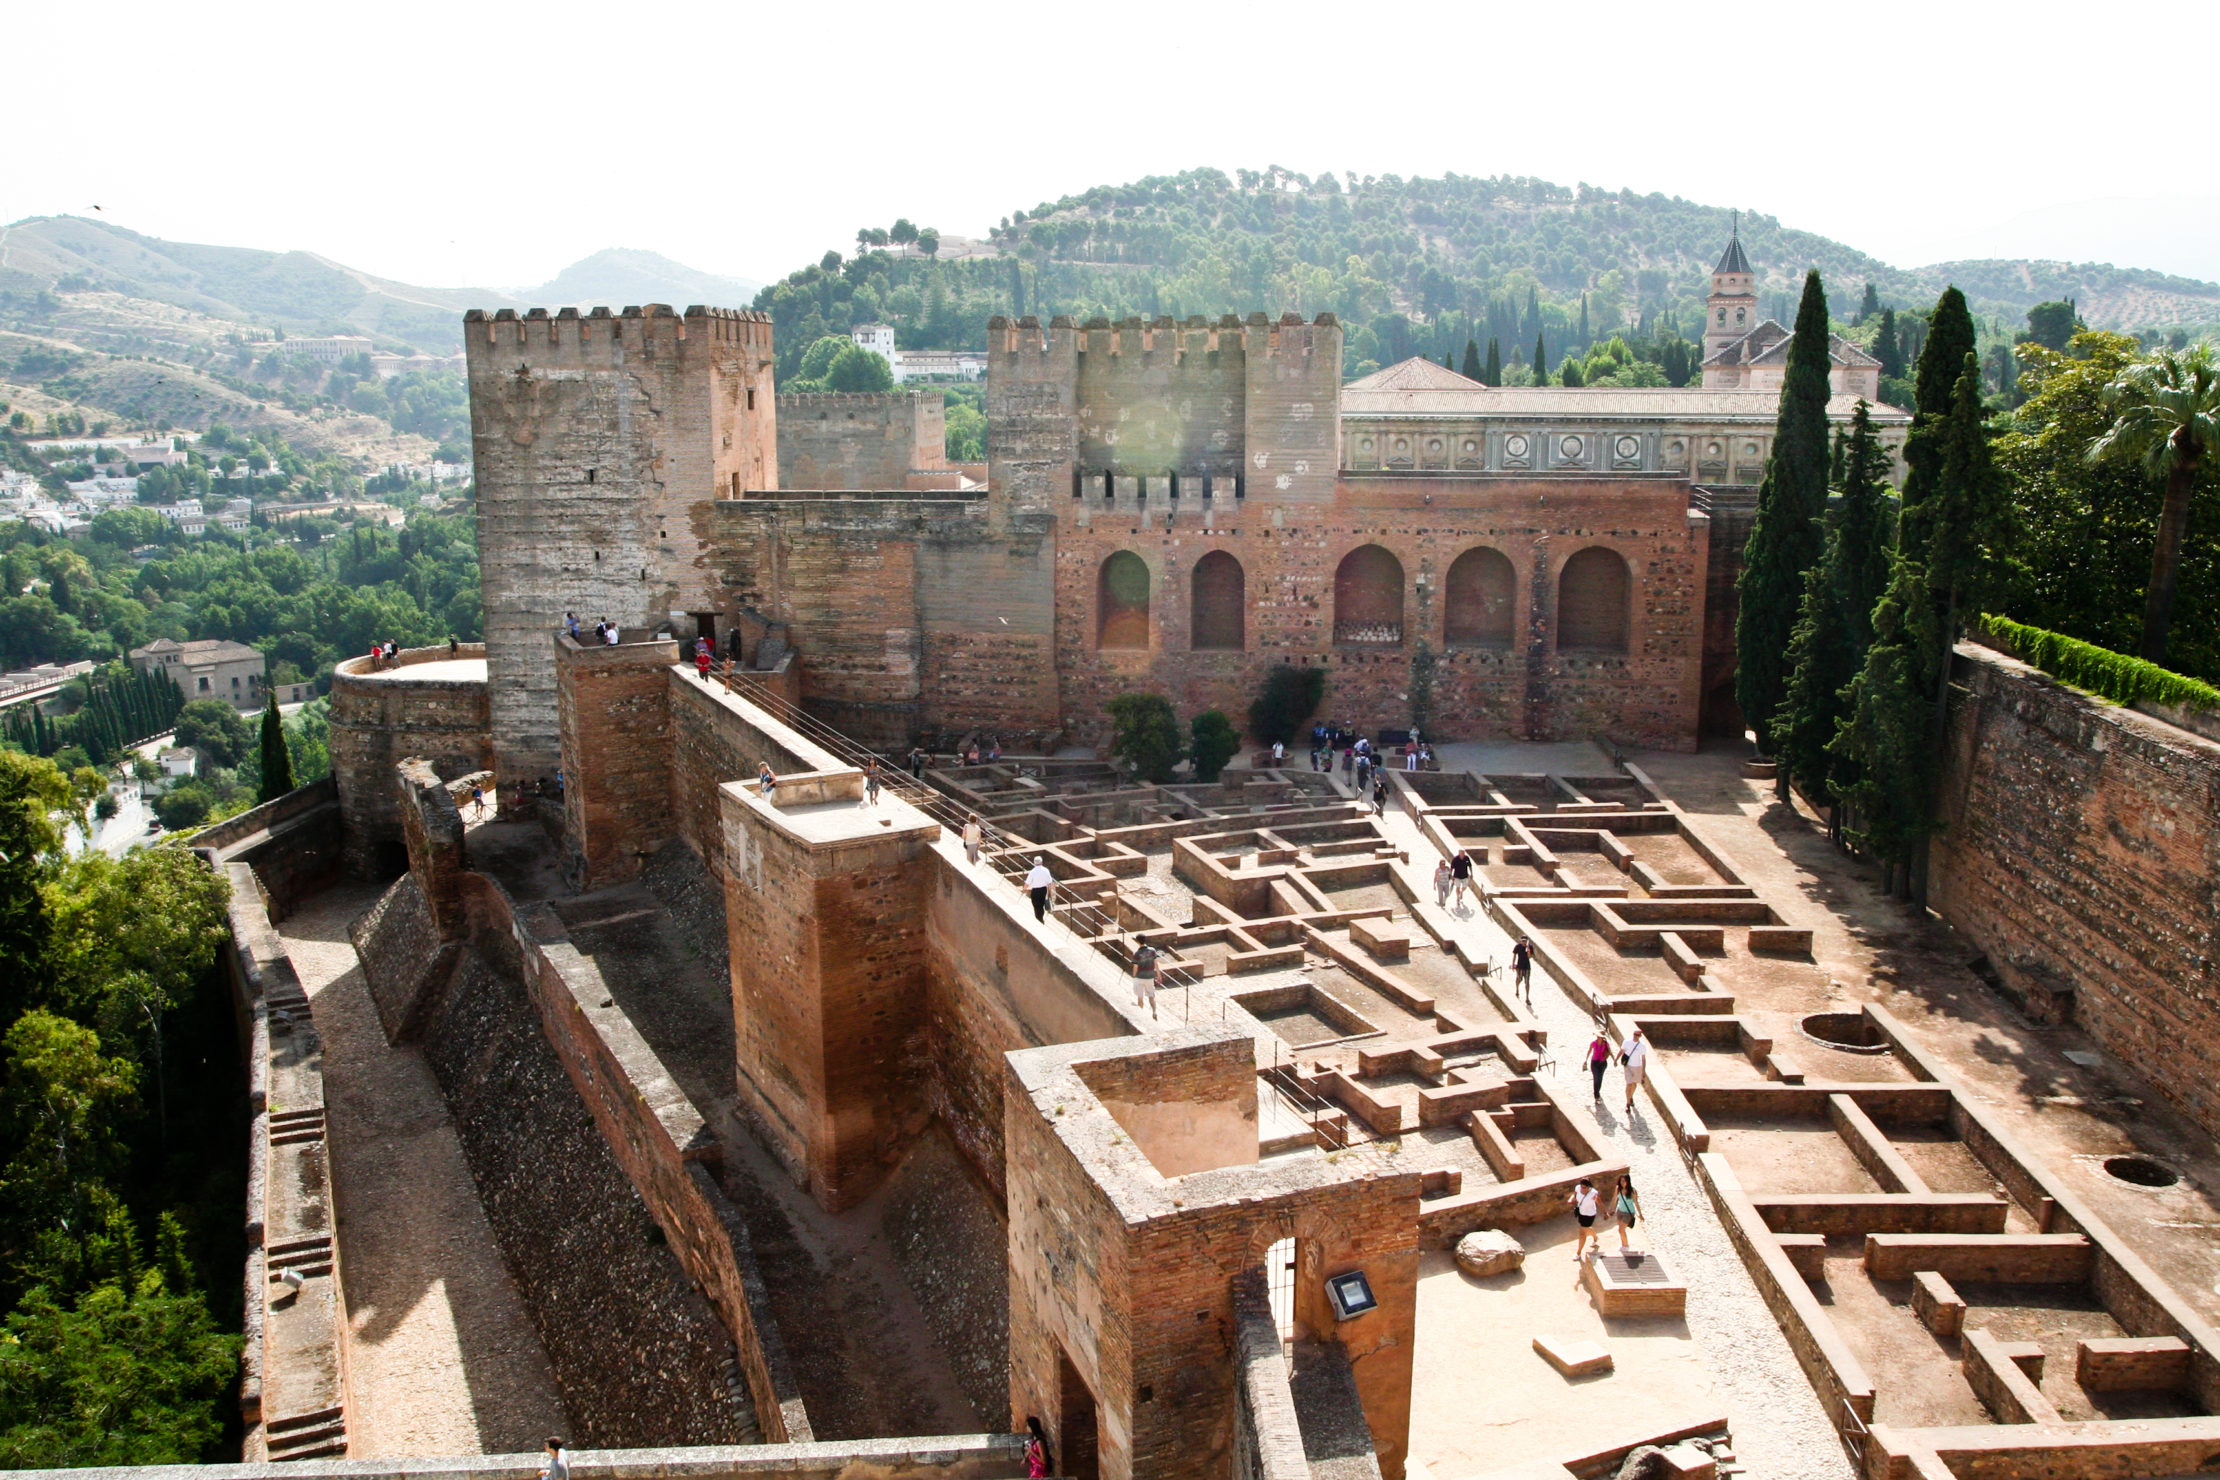 Alcazaba de la Alhambra